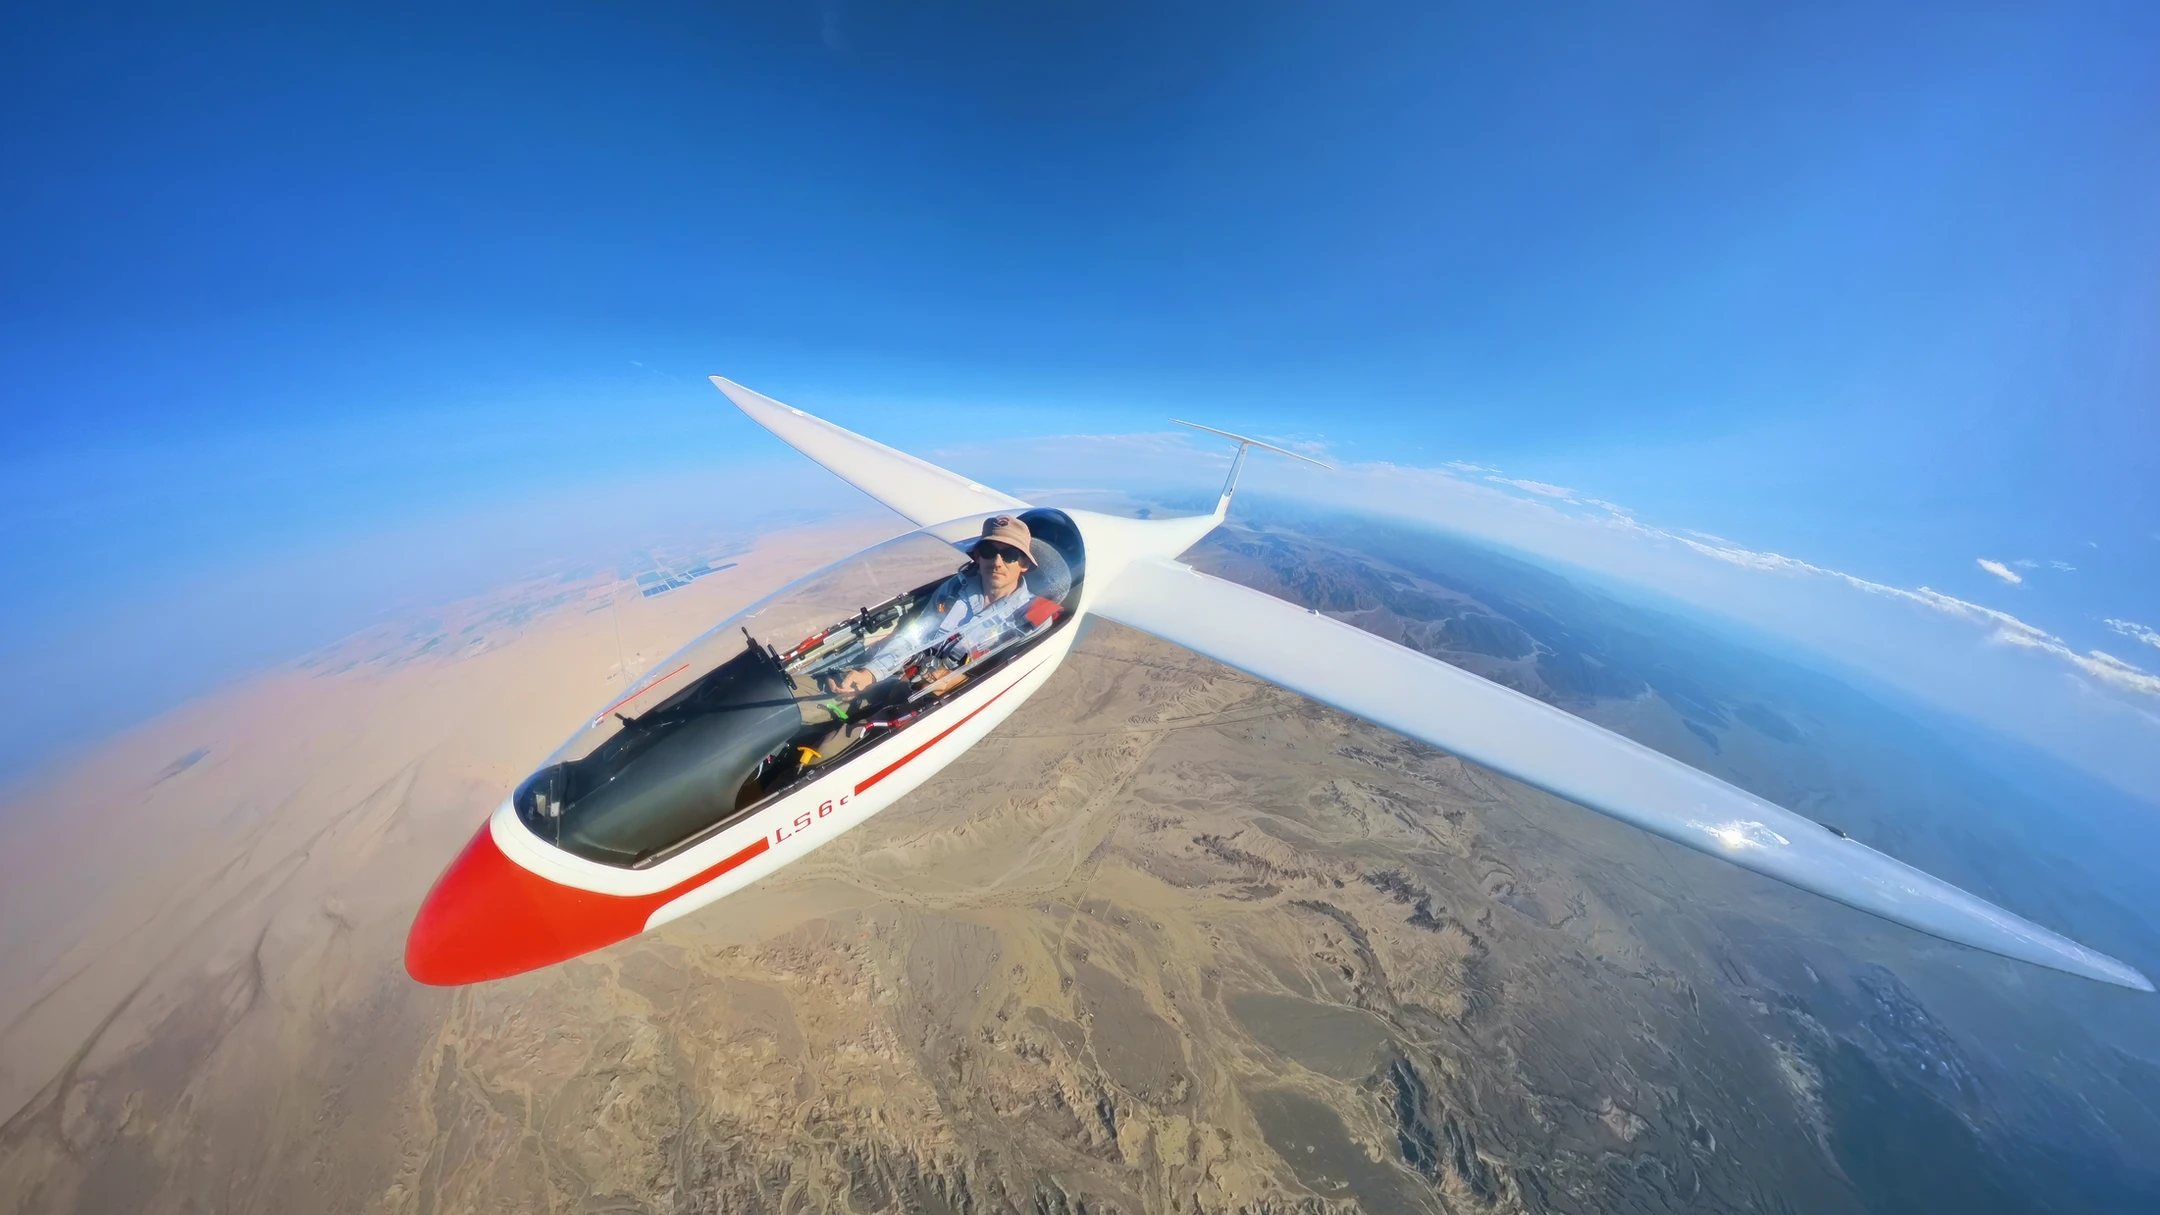 Glider flying above the desert